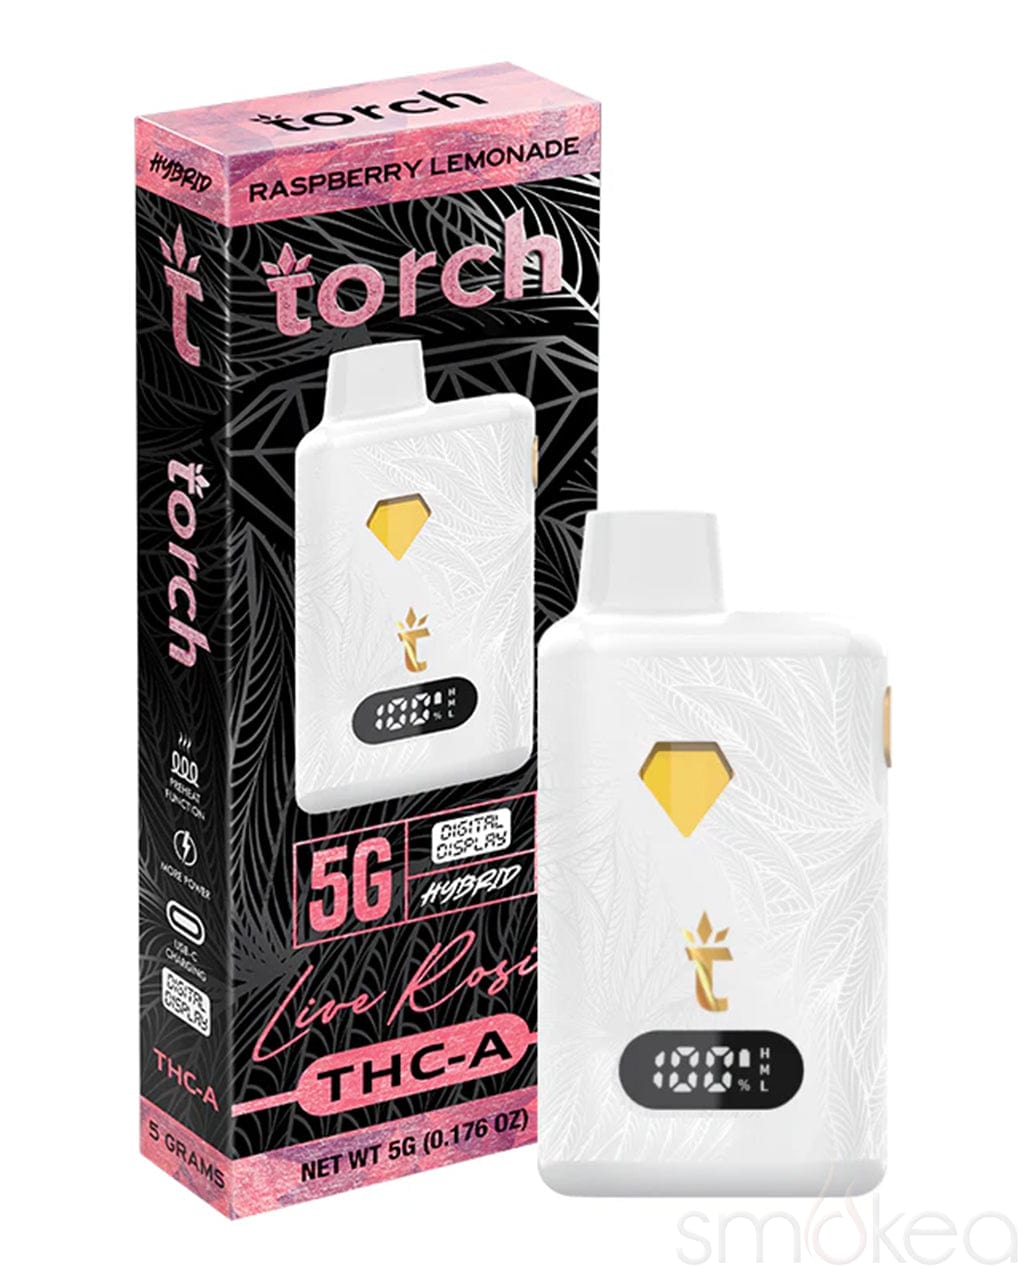 Torch 5g THCA Live Rosin Disposable Vape - Raspberry Lemonade